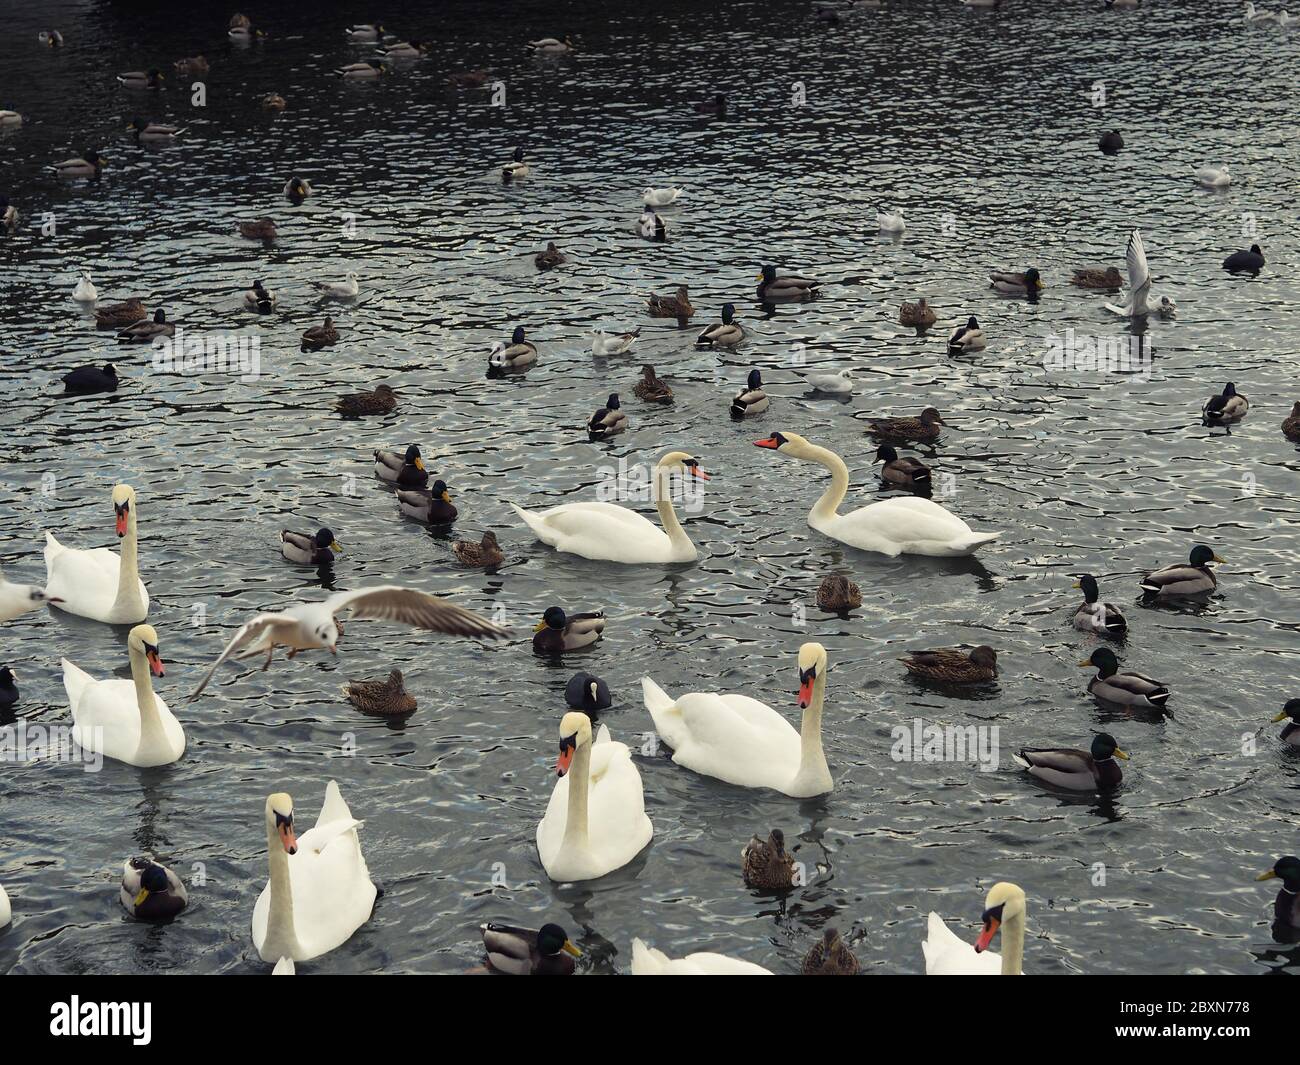 Cygnes et oiseaux sur l'eau à Stokholm, Sweeden. Nourrissage des oiseaux en ville. Banque D'Images